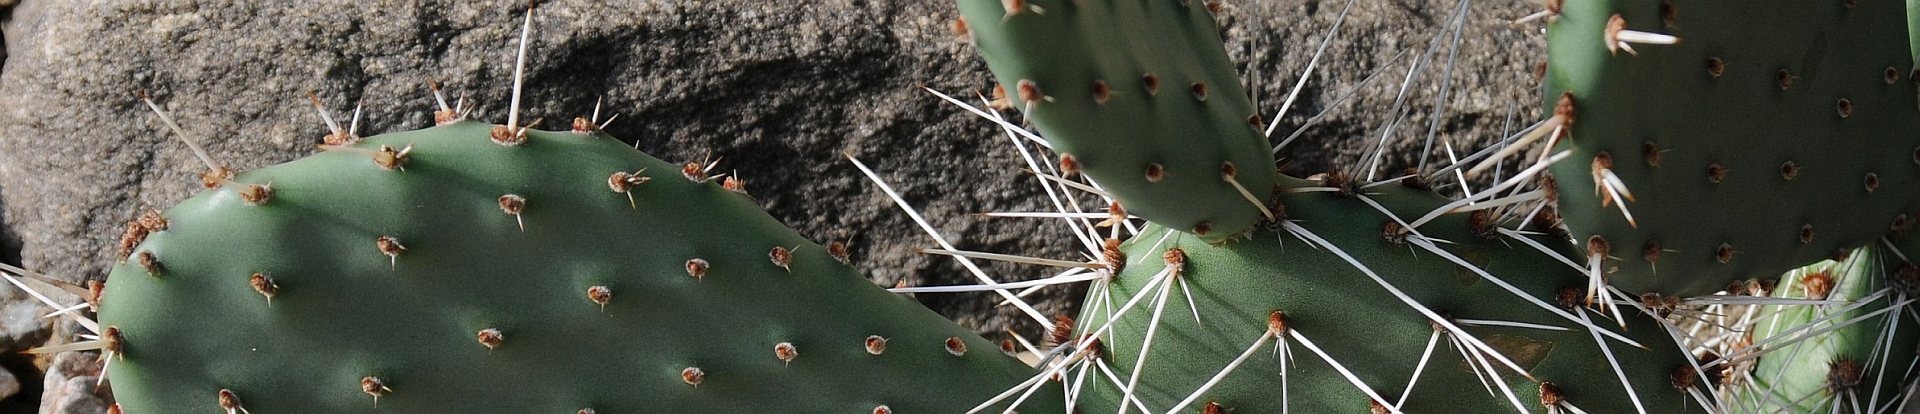 Opuntia phaecanta - Feigenkaktus